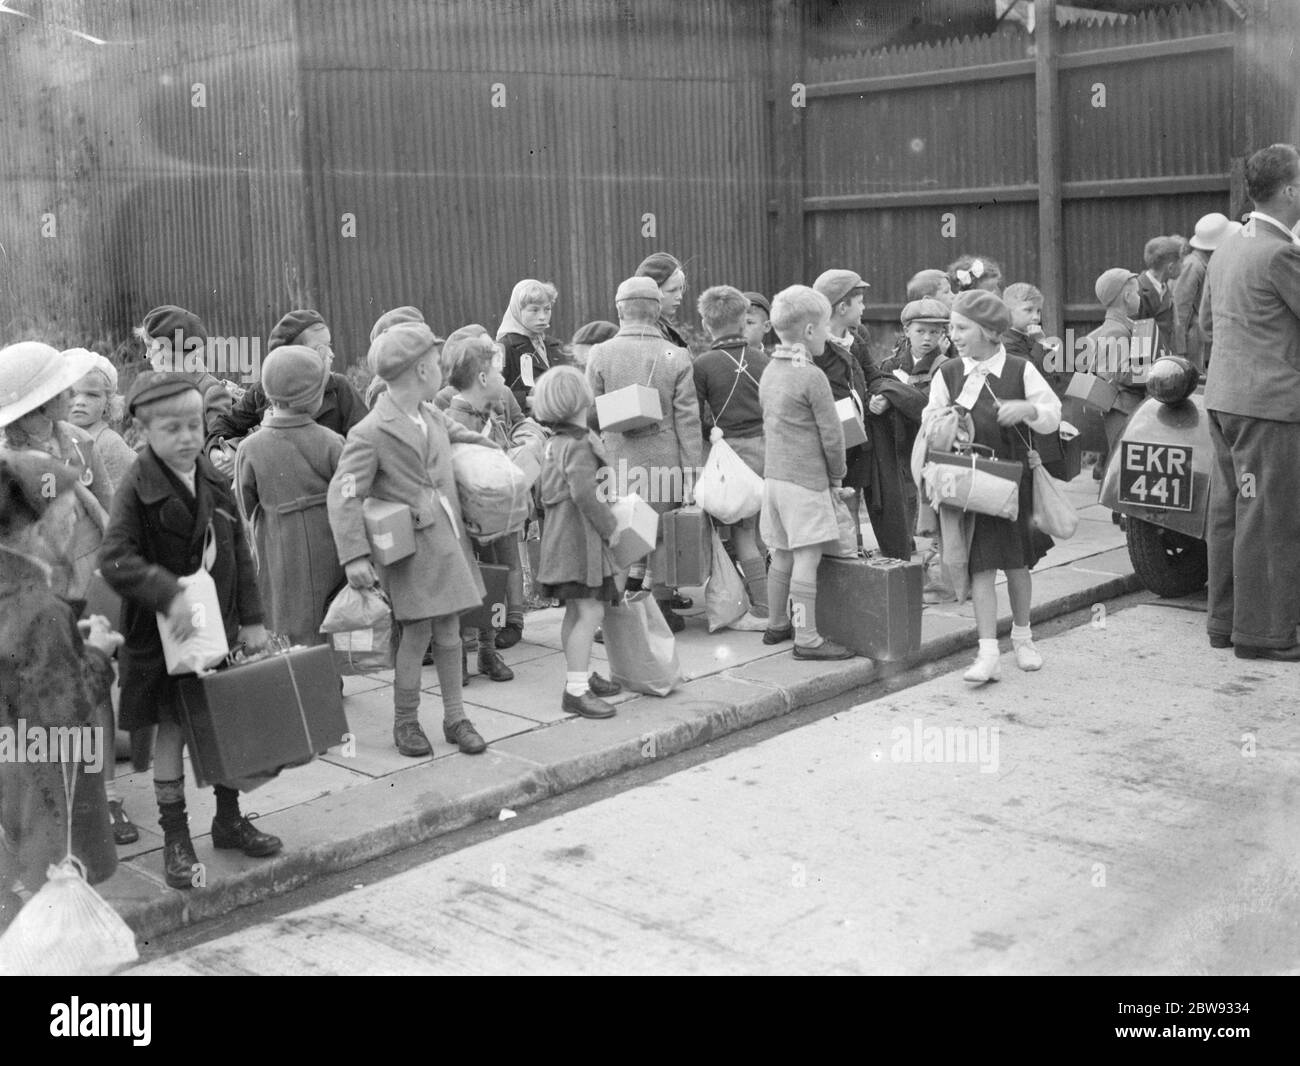 En réponse aux dangers de la guerre, le gouvernement britannique a lancé un programme pour évacuer les enfants des grands centres urbains vers des logements privés dans des zones plus rurales. La photo montre les enfants pendant les procédures d'évacuation à Gravesend , Kent . 1939 Banque D'Images